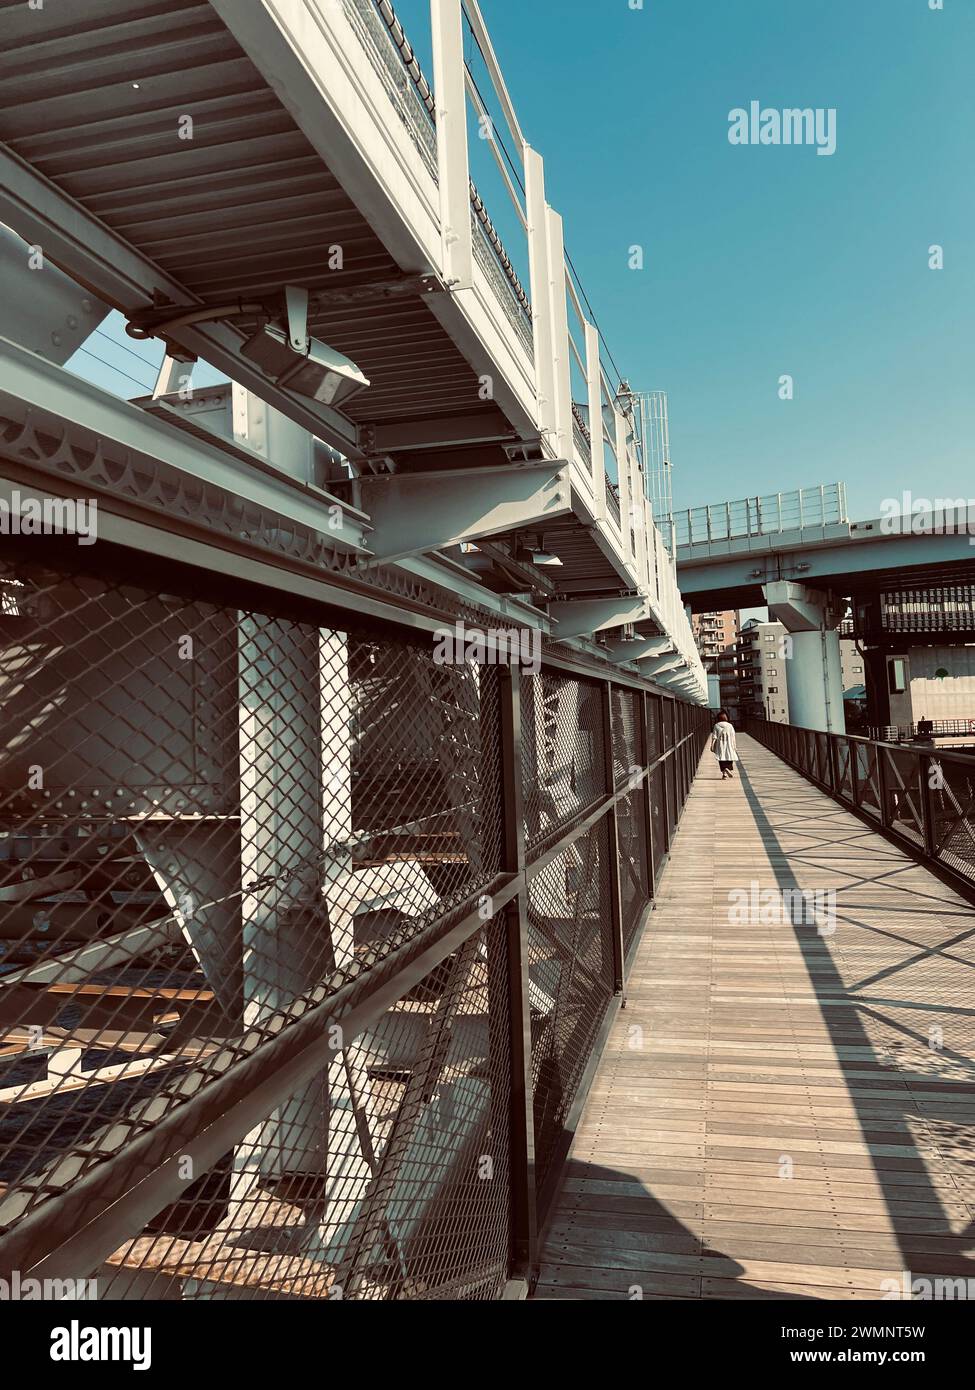 Ponte di metallo con scale, ringhiere in acciaio e persone che camminano Foto Stock